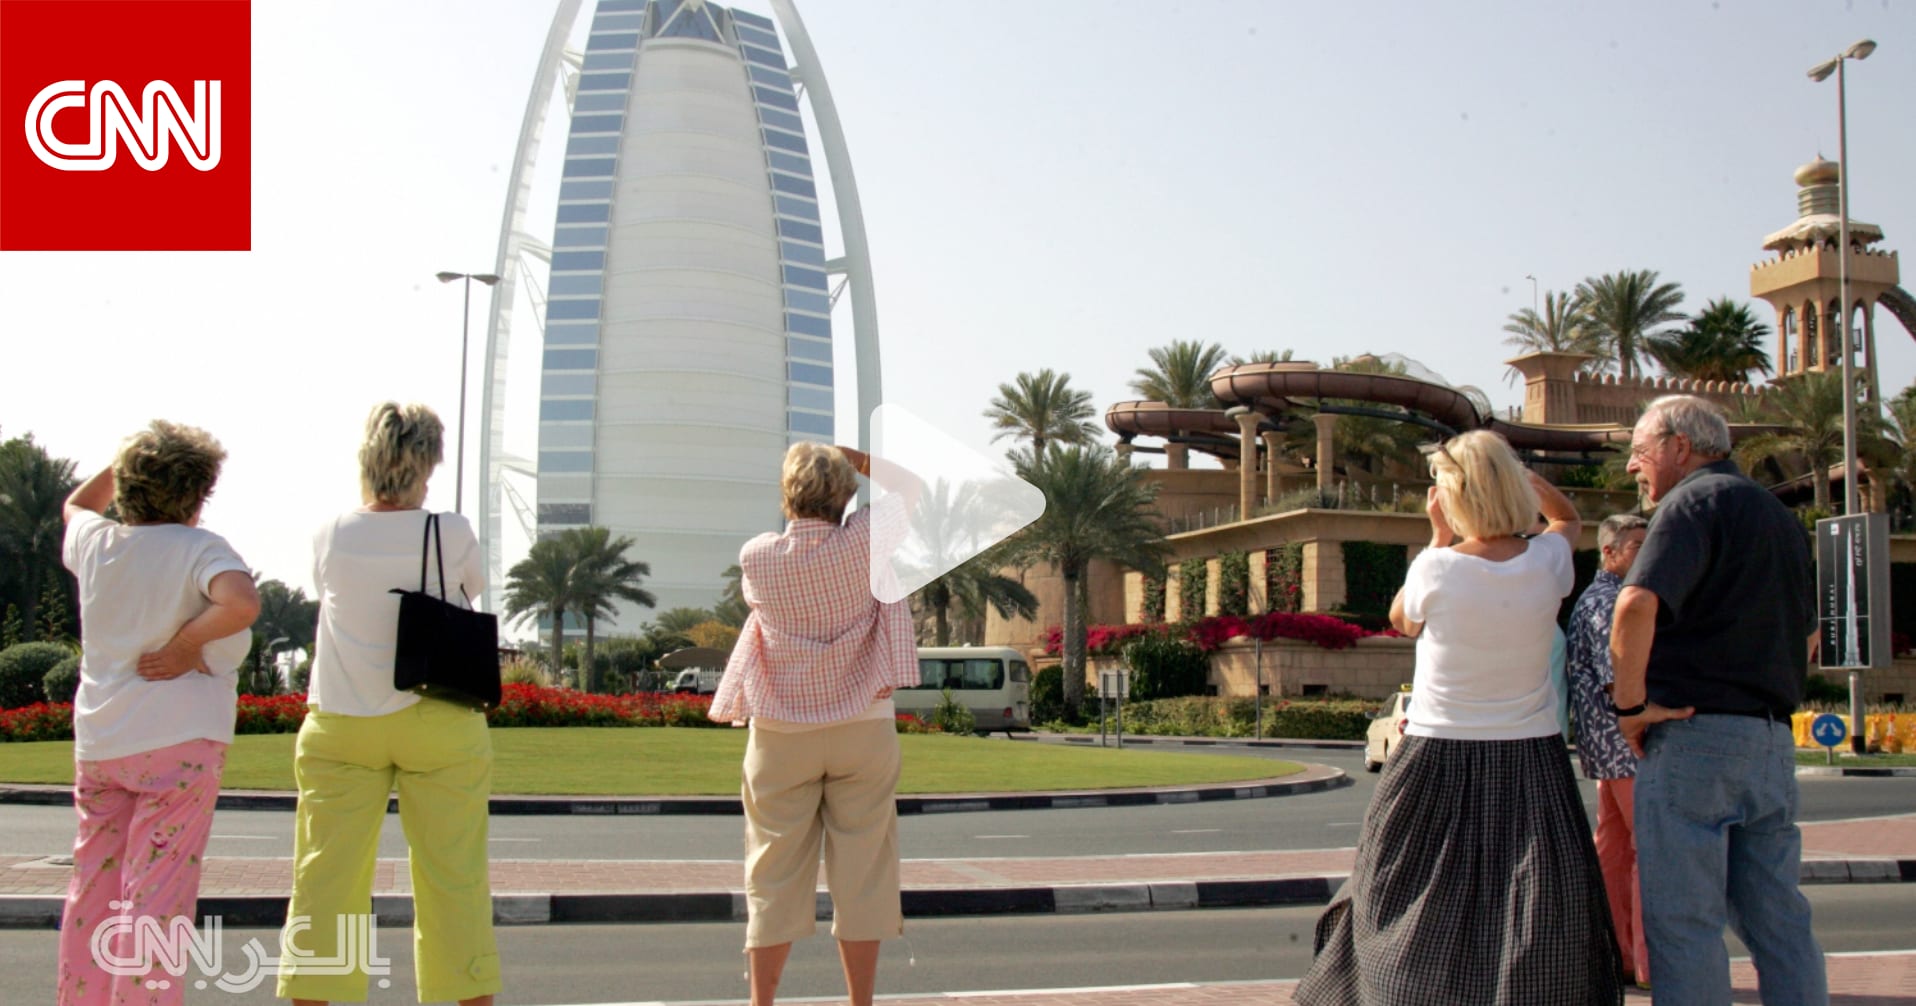 Открыт ли дубай для туристов сейчас. Туристы в Дубае. Nehbcnrb d 'vbhfnf[. Российские туристы в ОАЭ. Туристы в Эмиратах.